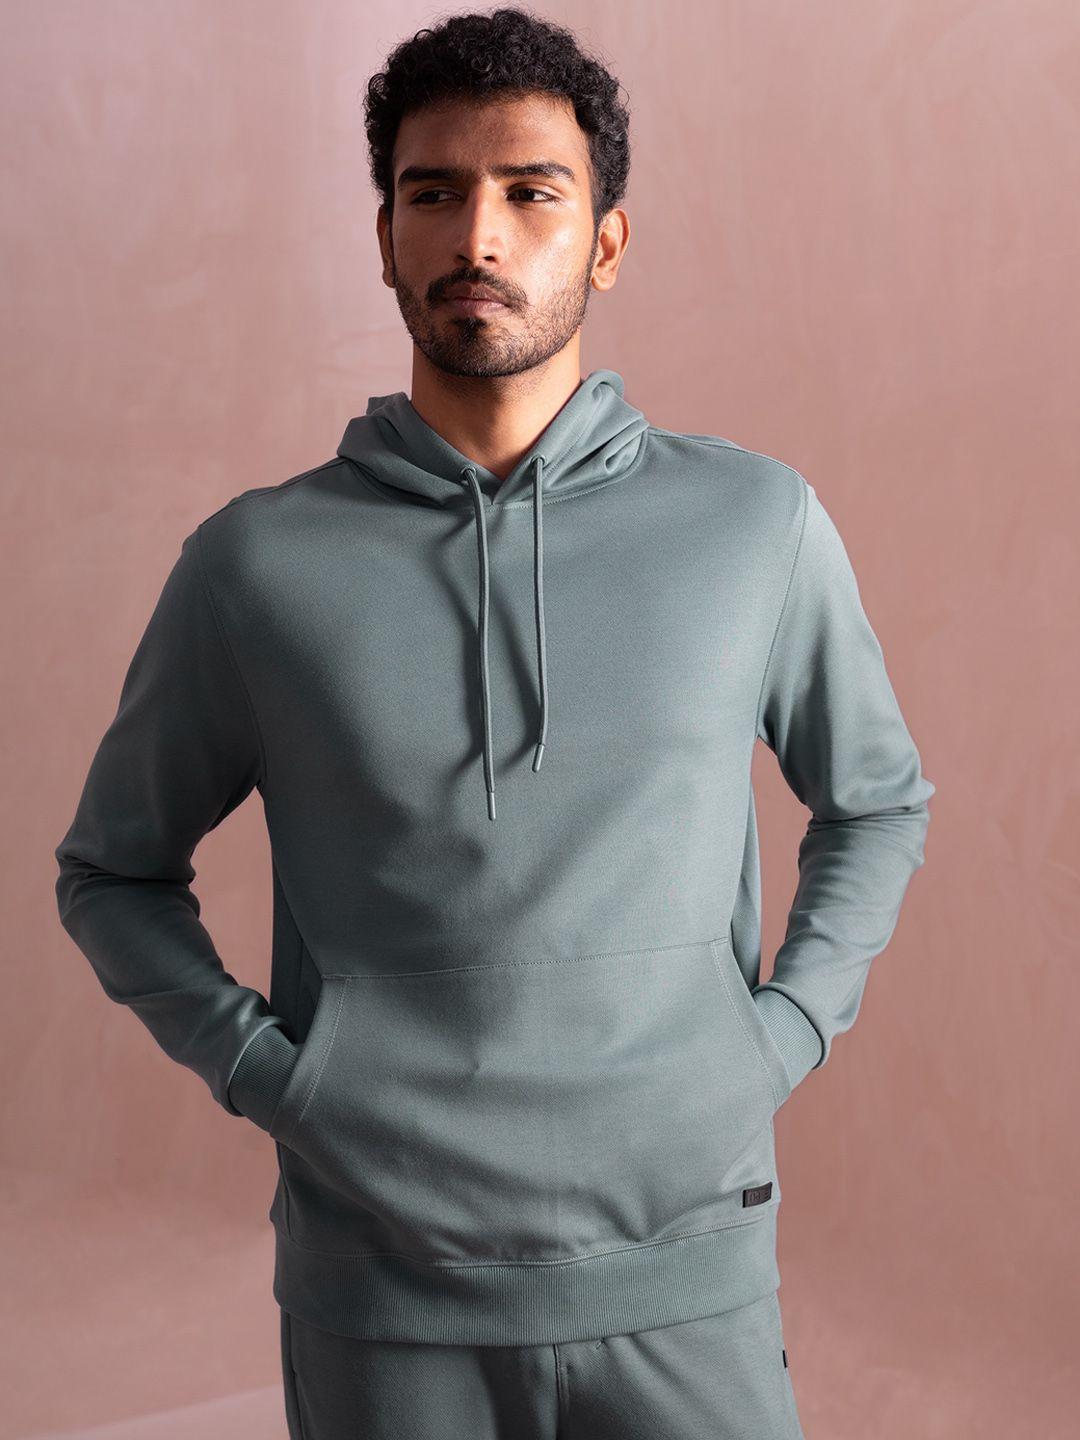 damensch-statement-elemental-soft-premium-cotton-blend-hooded-sweatshirt